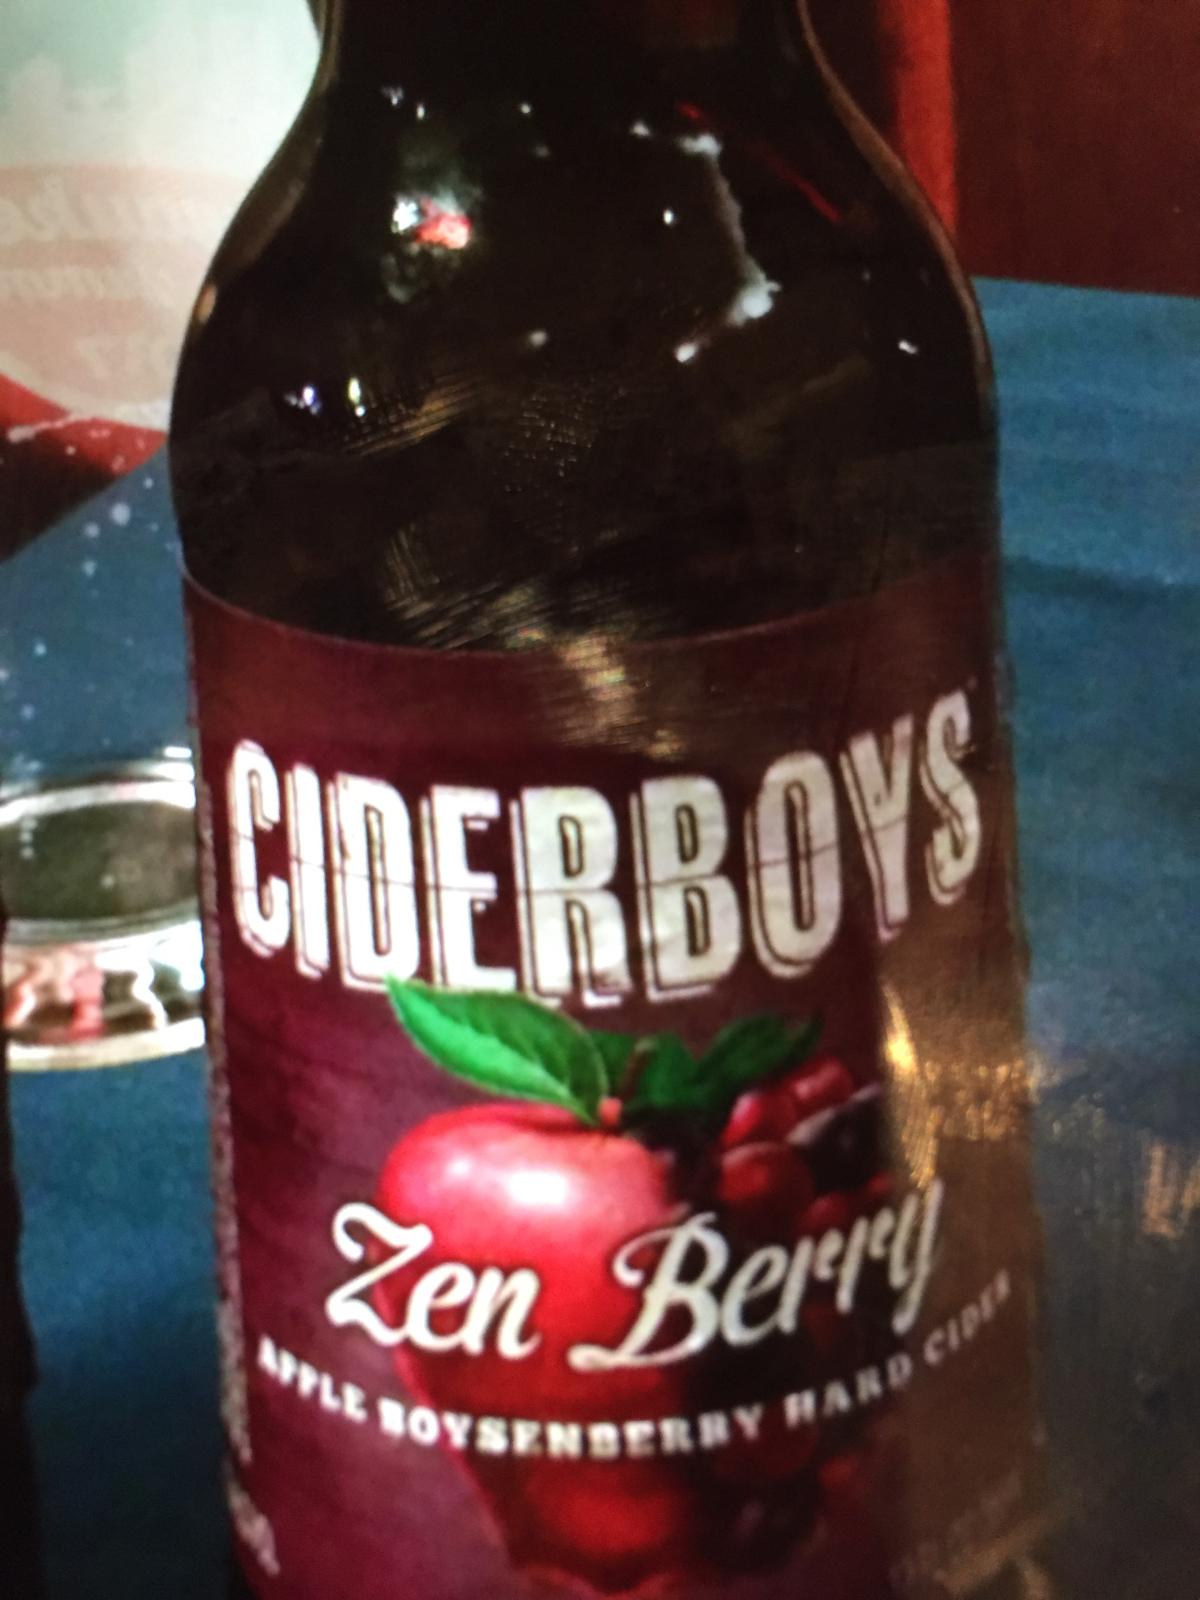 Ciderboys Zen Berry